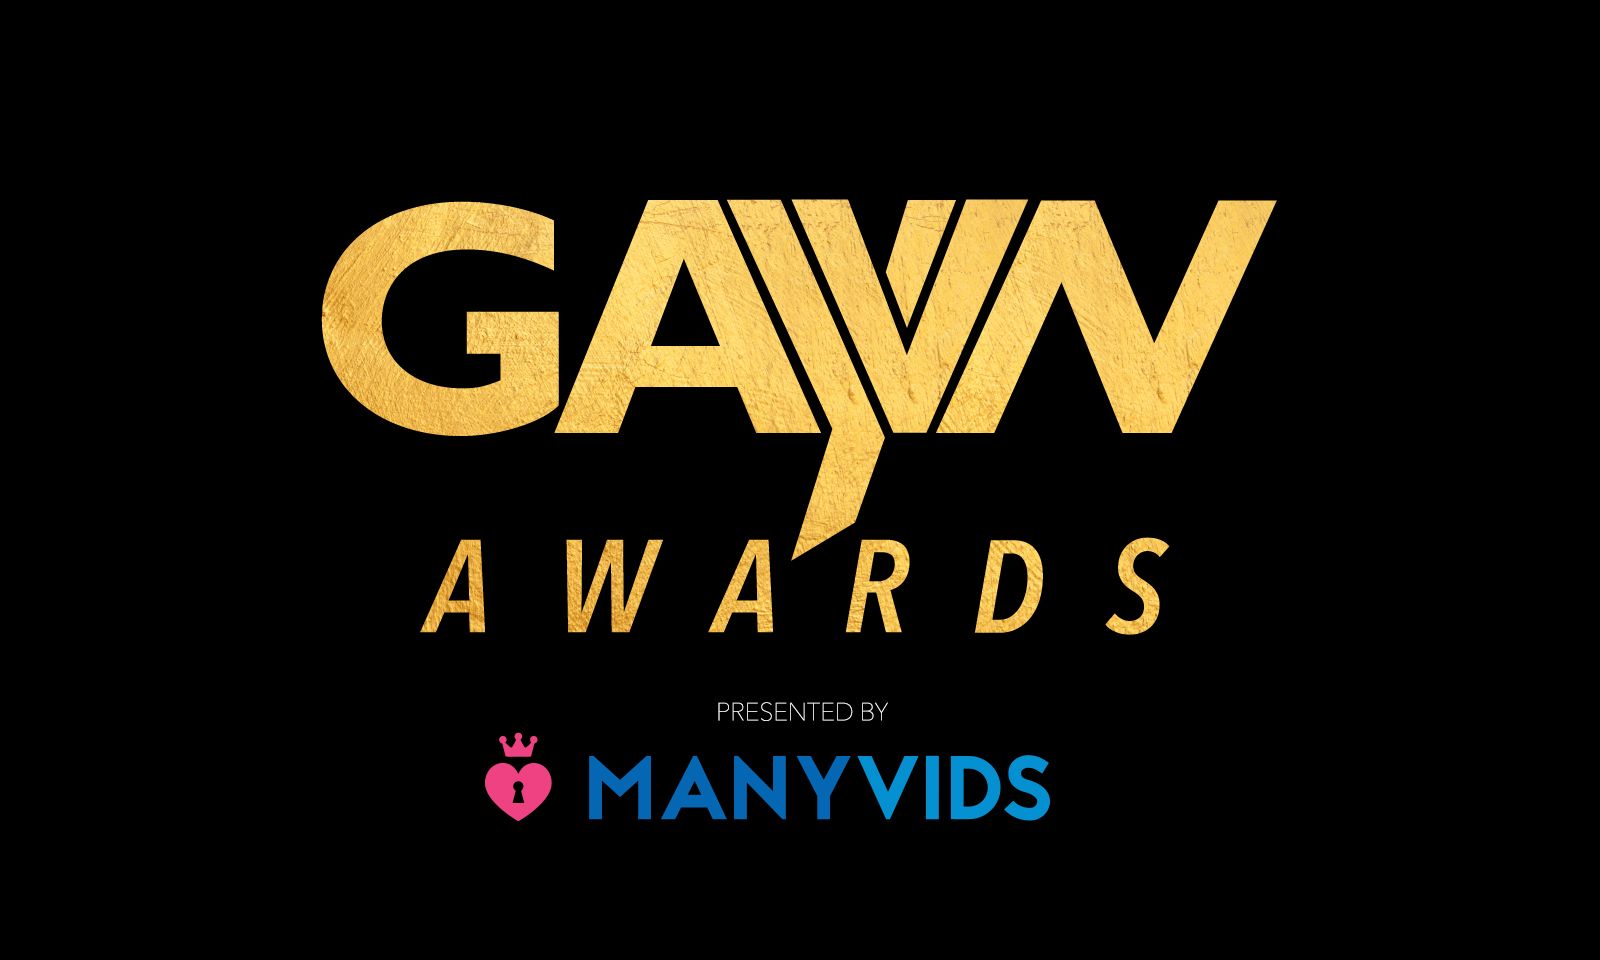 2019 GayVN Awards Winners Announced